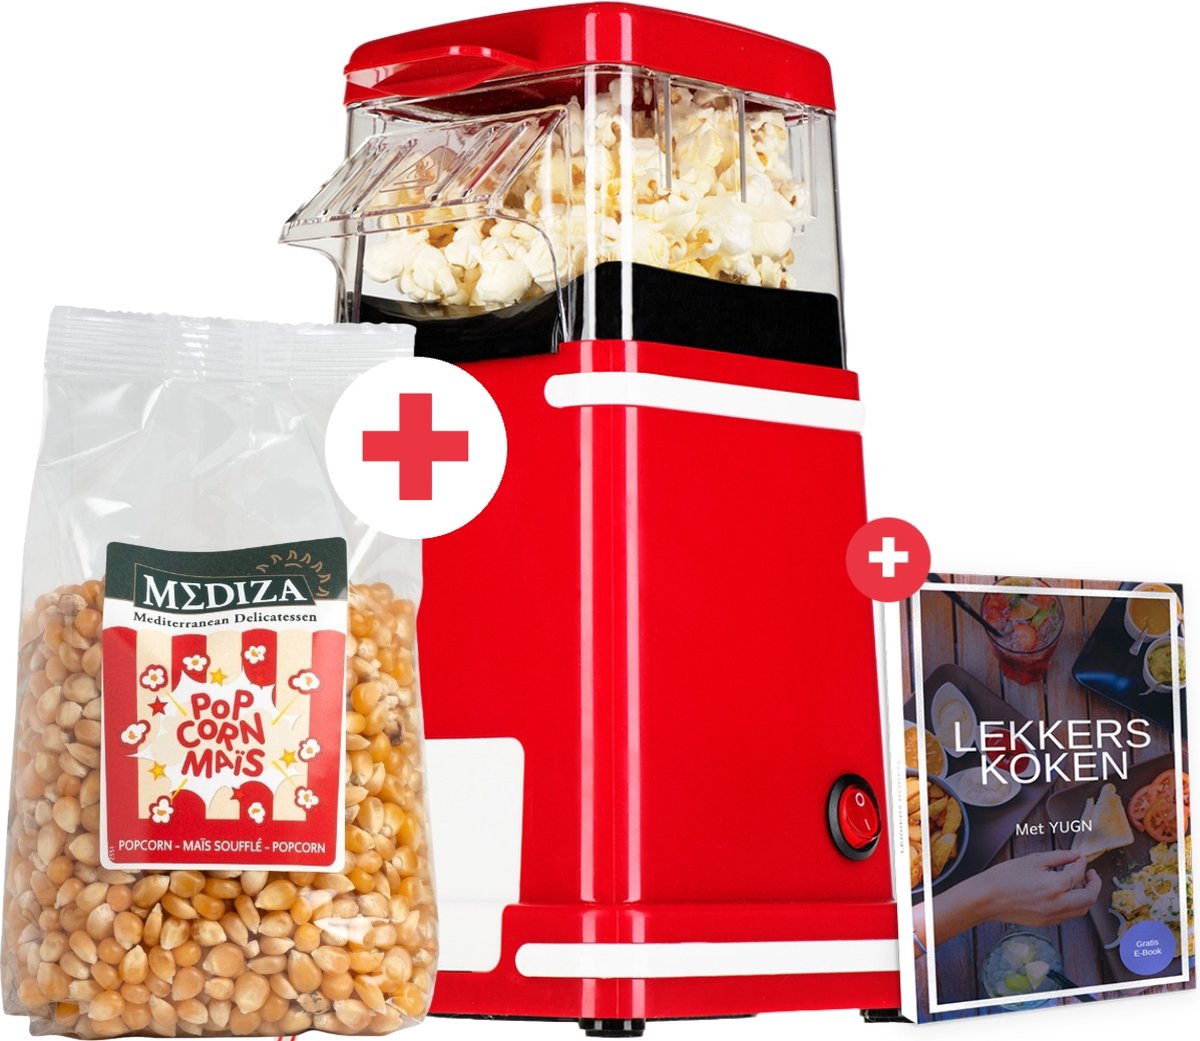 YUGN RETRO Popcorn machine met 400G Popcorn Mais - Nostalgische Popcornmachine Voor Thuis - Popcorn maker - 1200 W - Kleur Rode - eBook toegang - Cadeautip